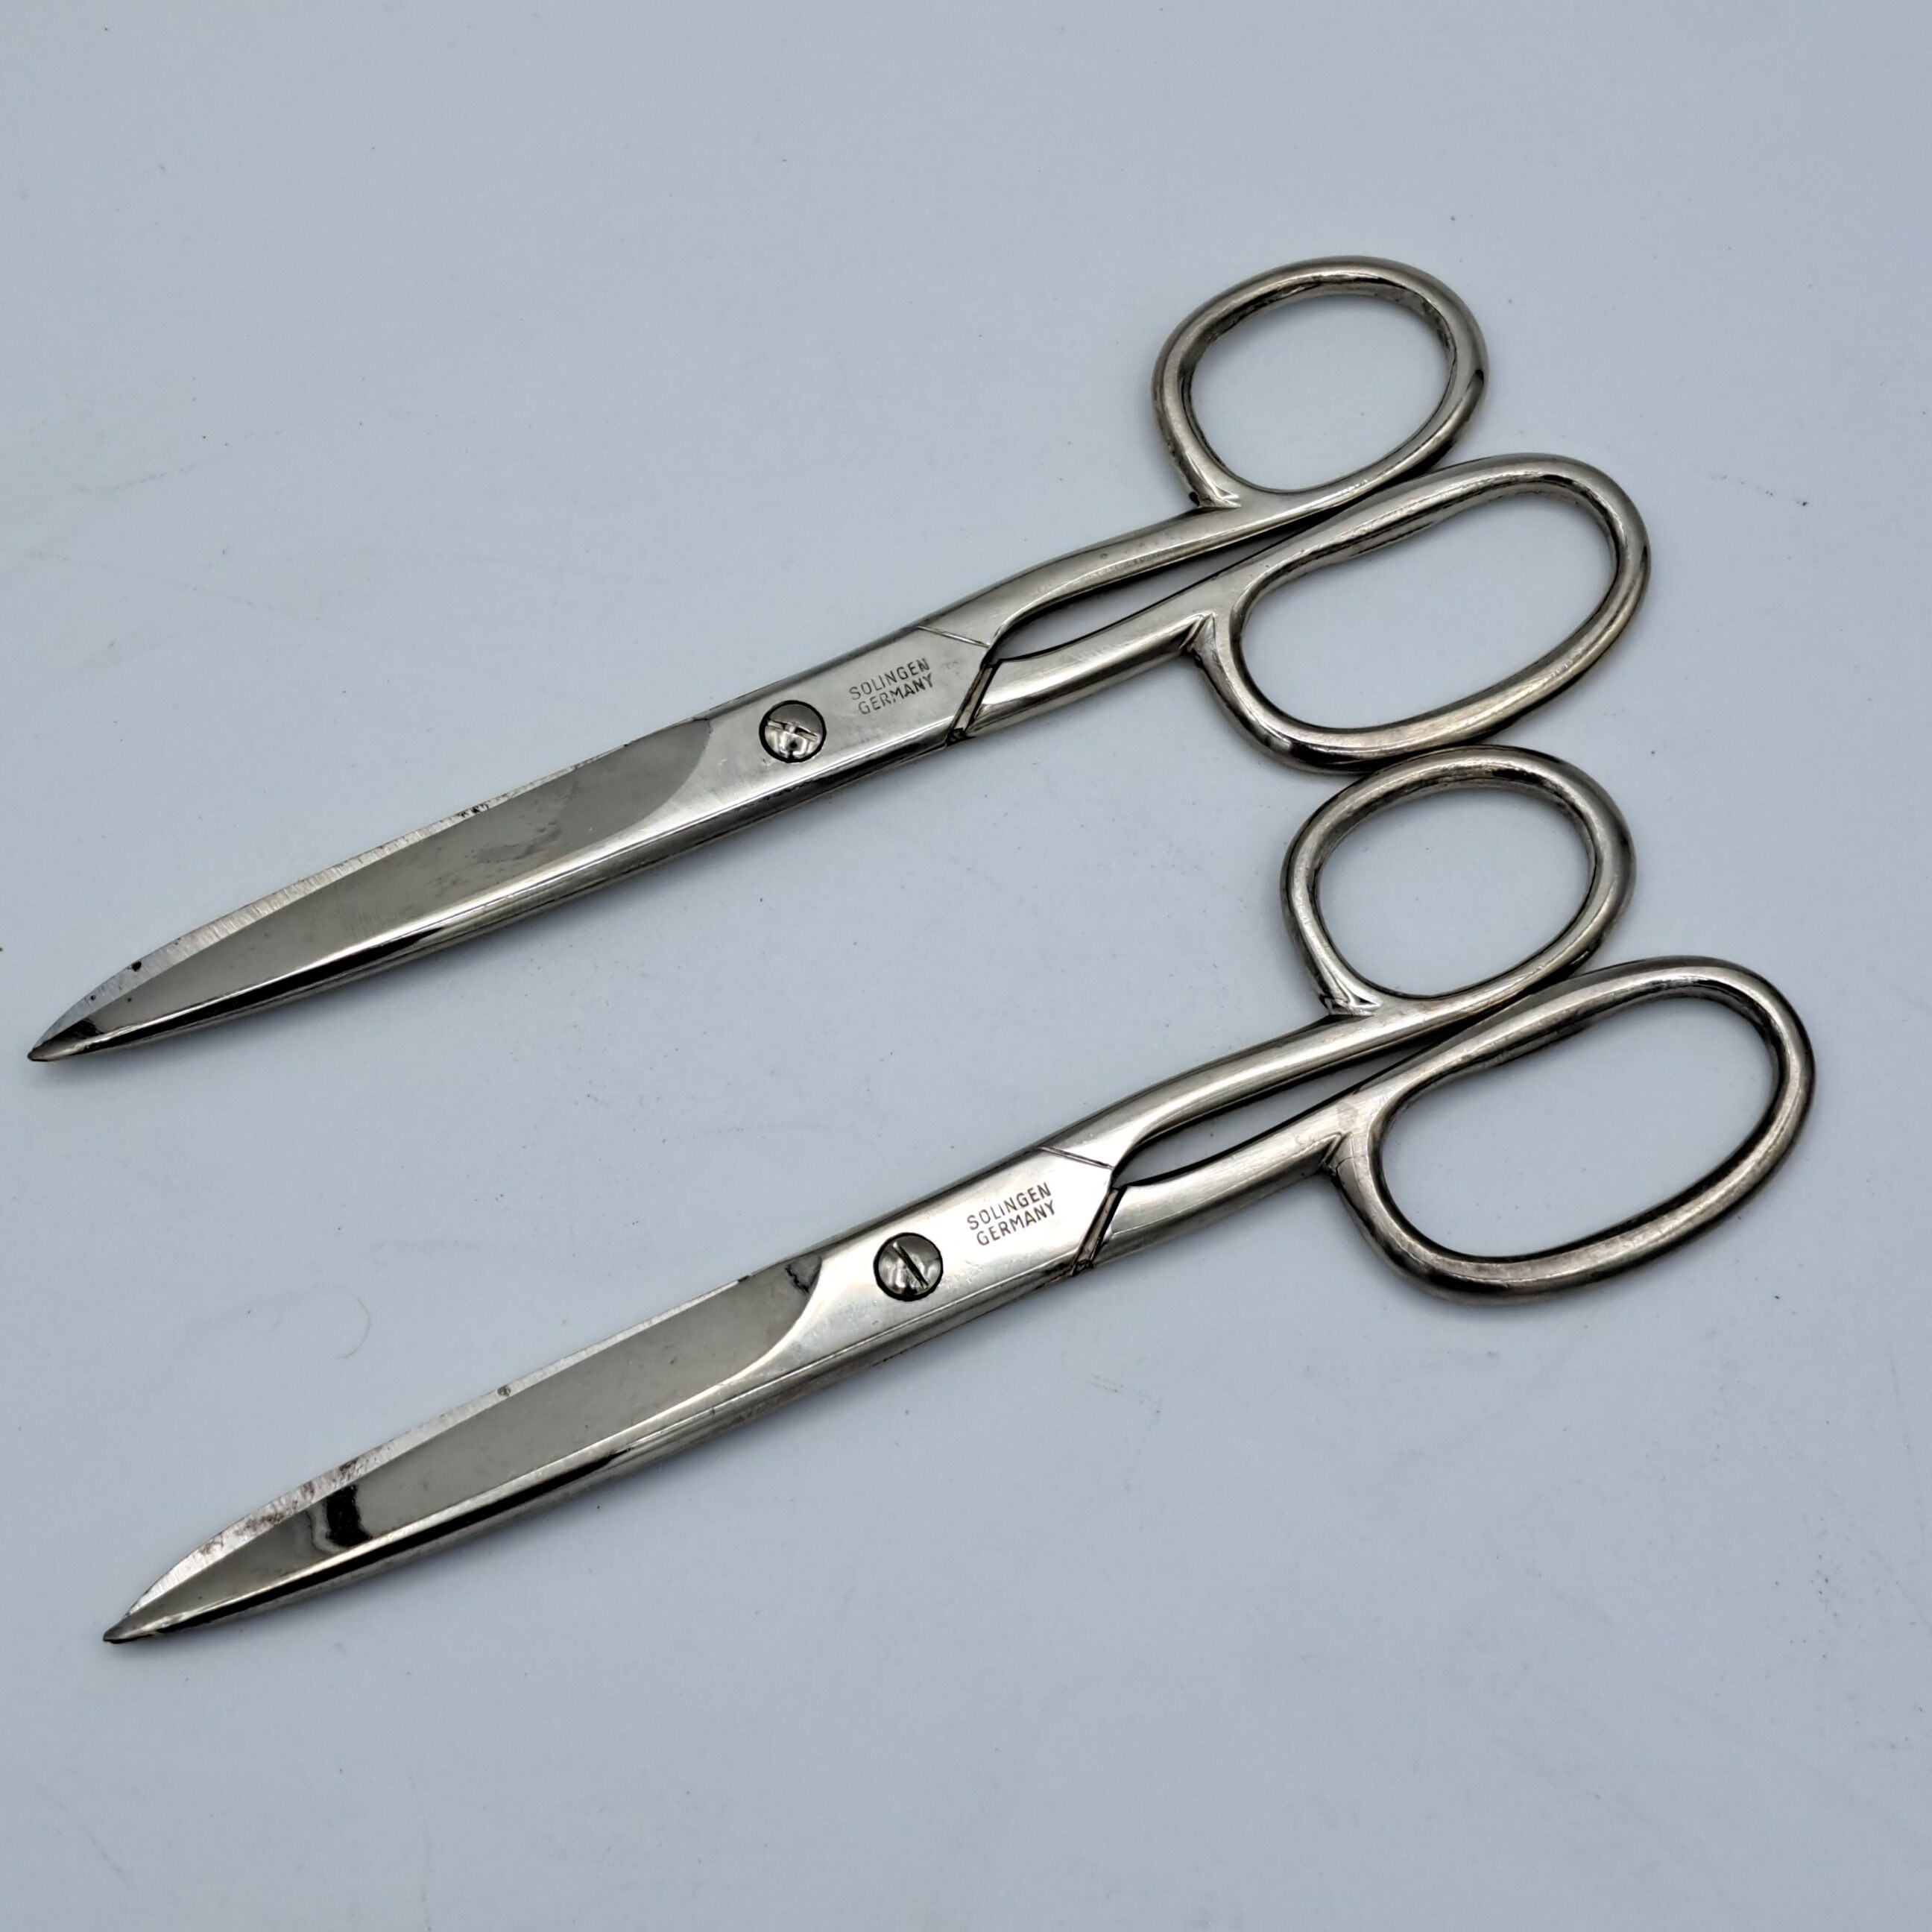 Giesen & Forsthoff's Timor Left-hand Nail Scissors, Stainless